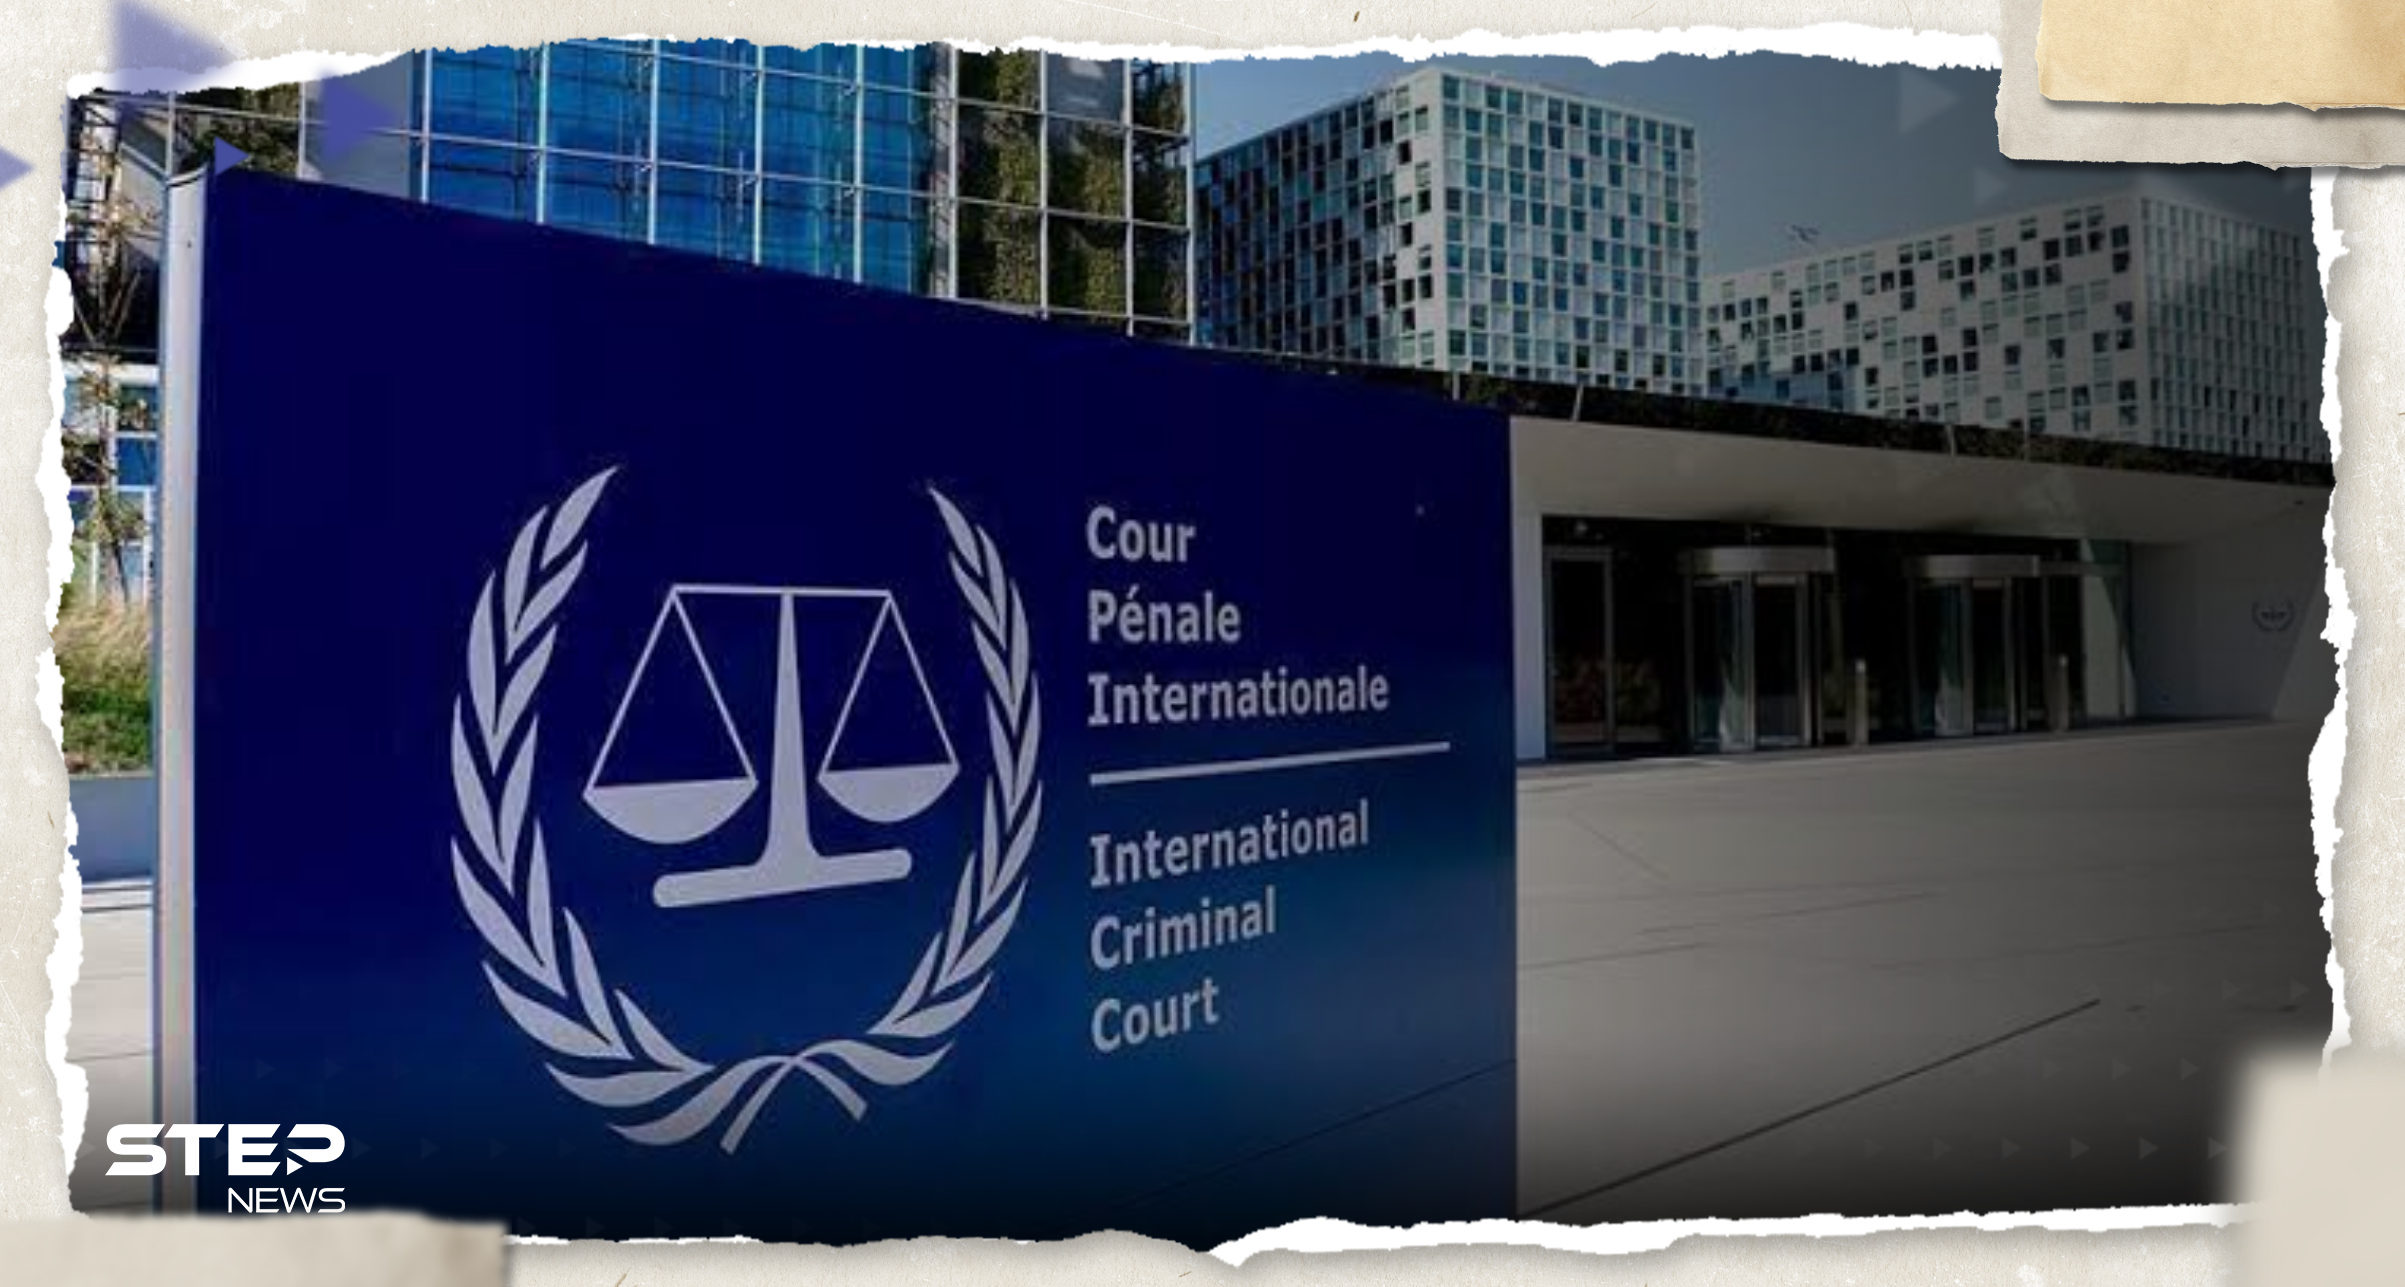 5 دول بينها إثنتان عربيتان توجه طلباً رسمياً للمحكمة الجنائية الدولية بشأن غزة